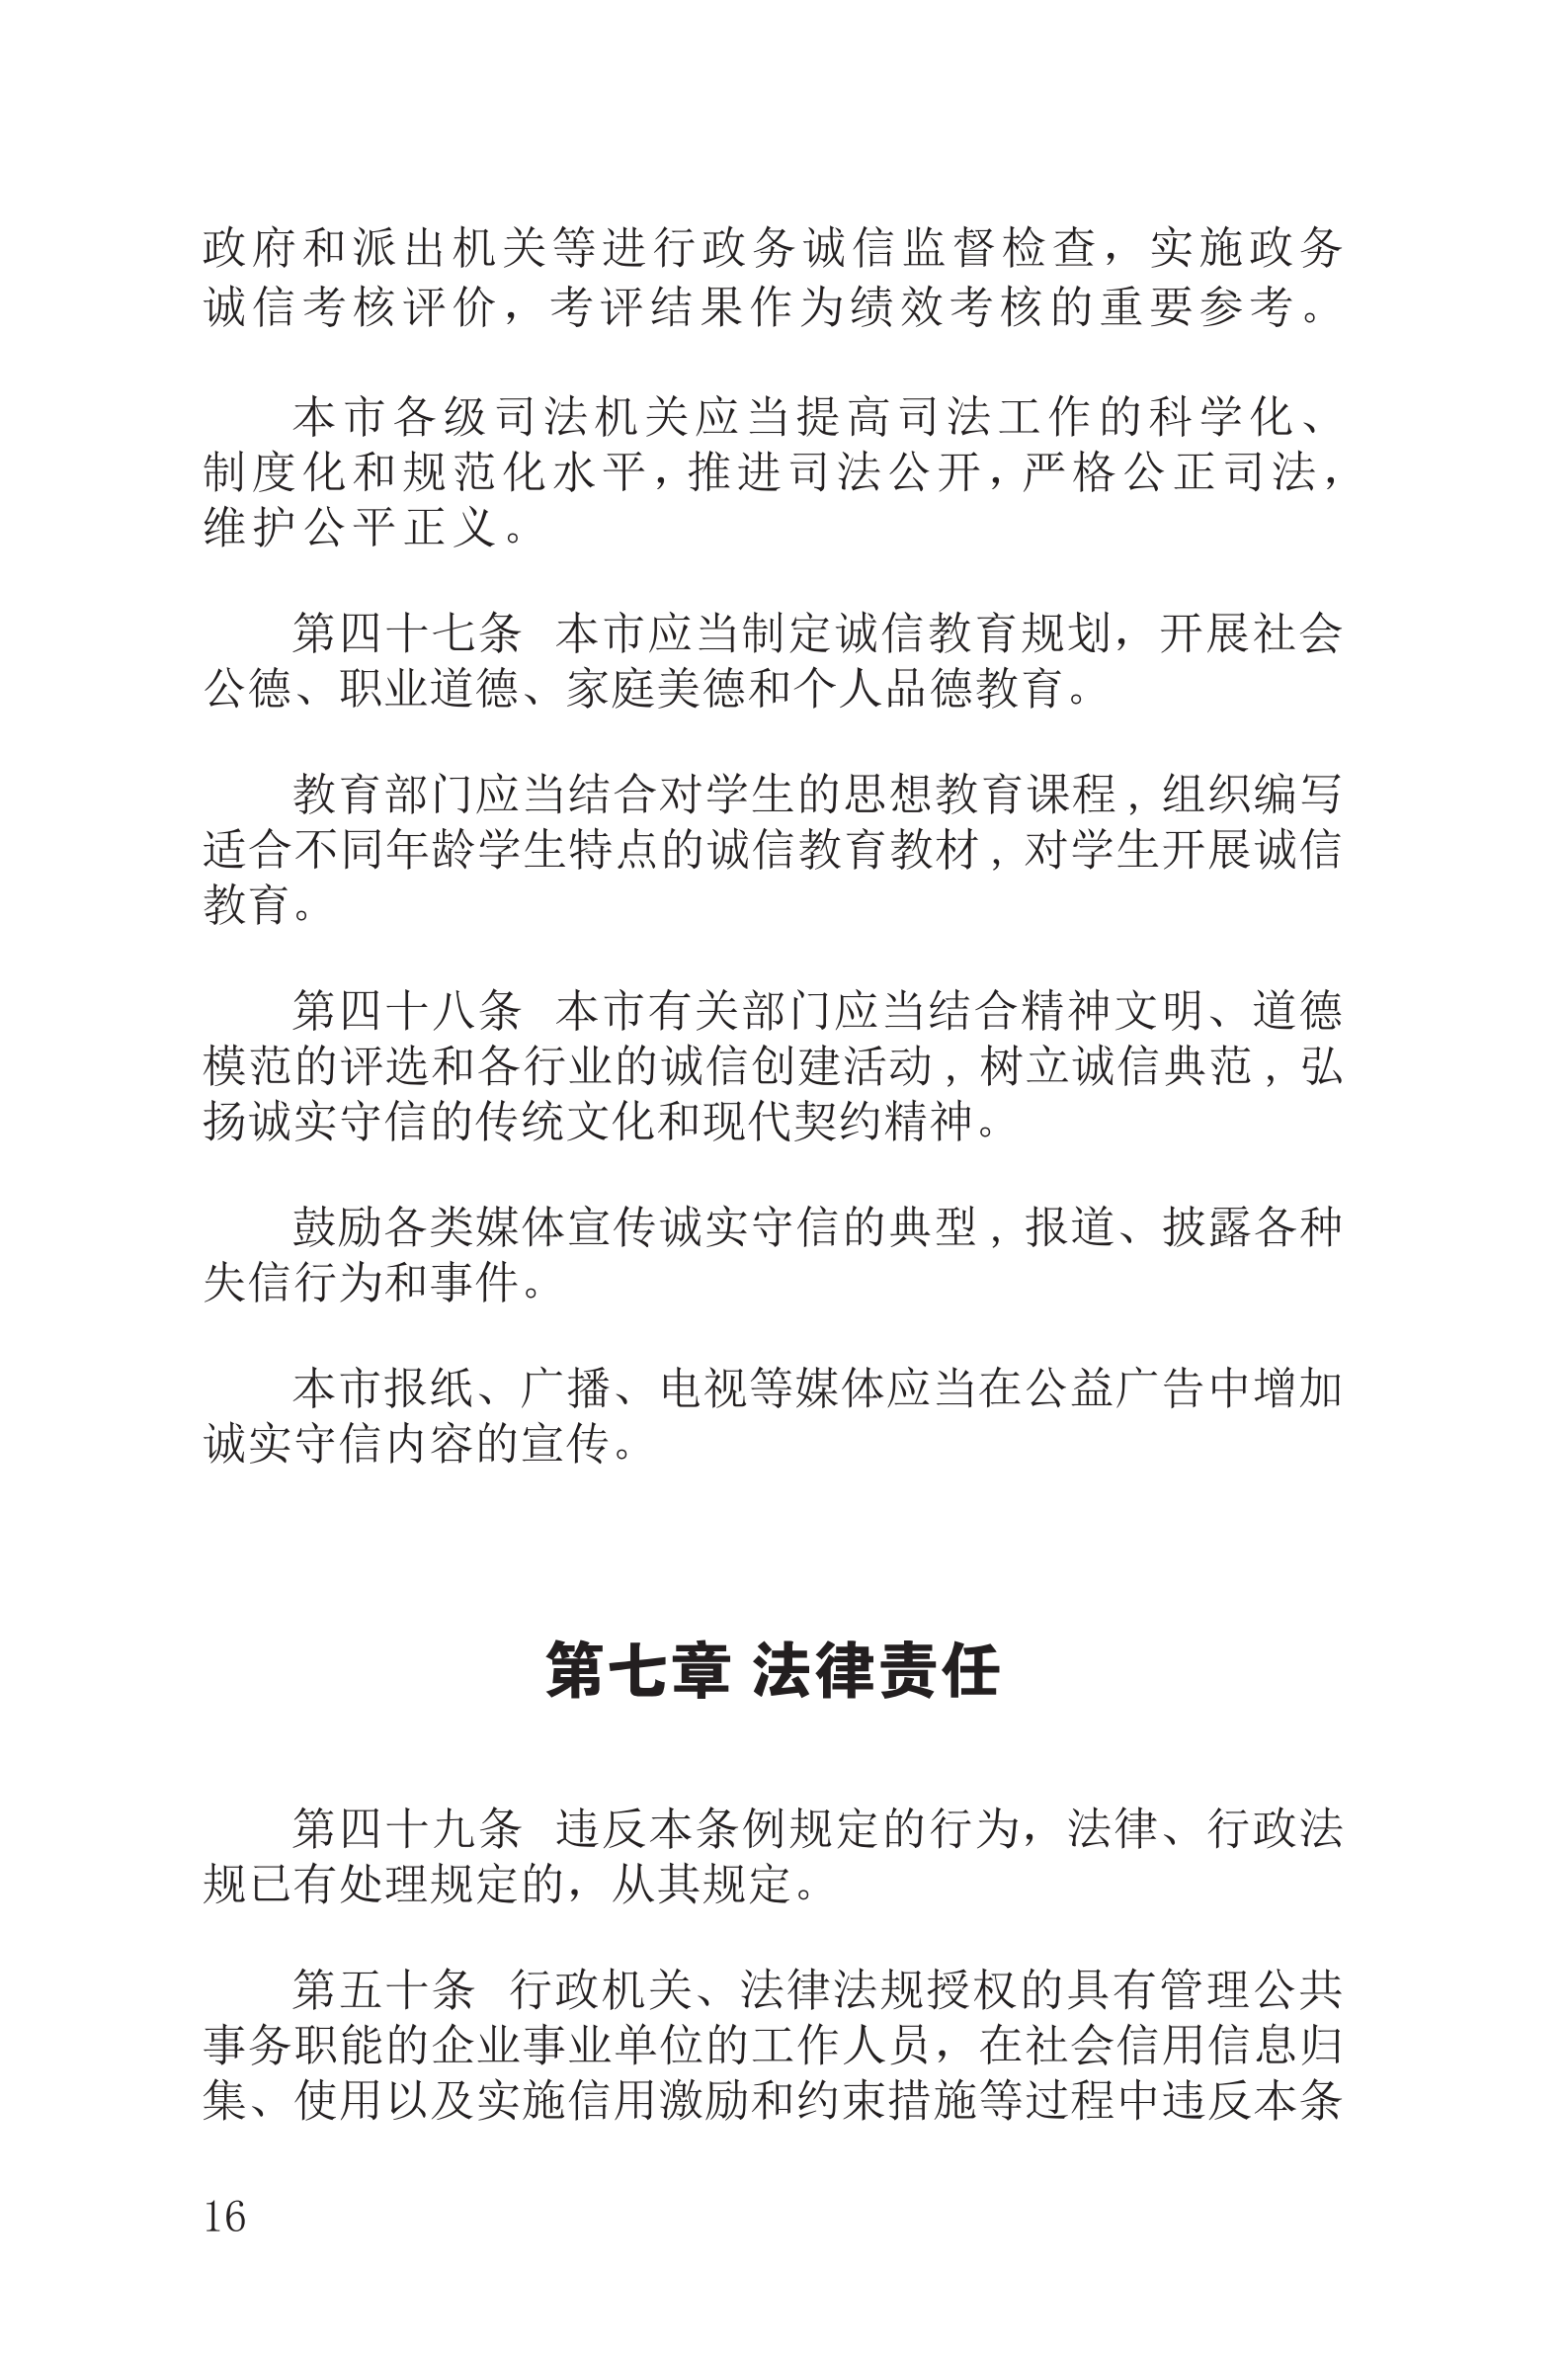 上海市社会信用条例_17.png